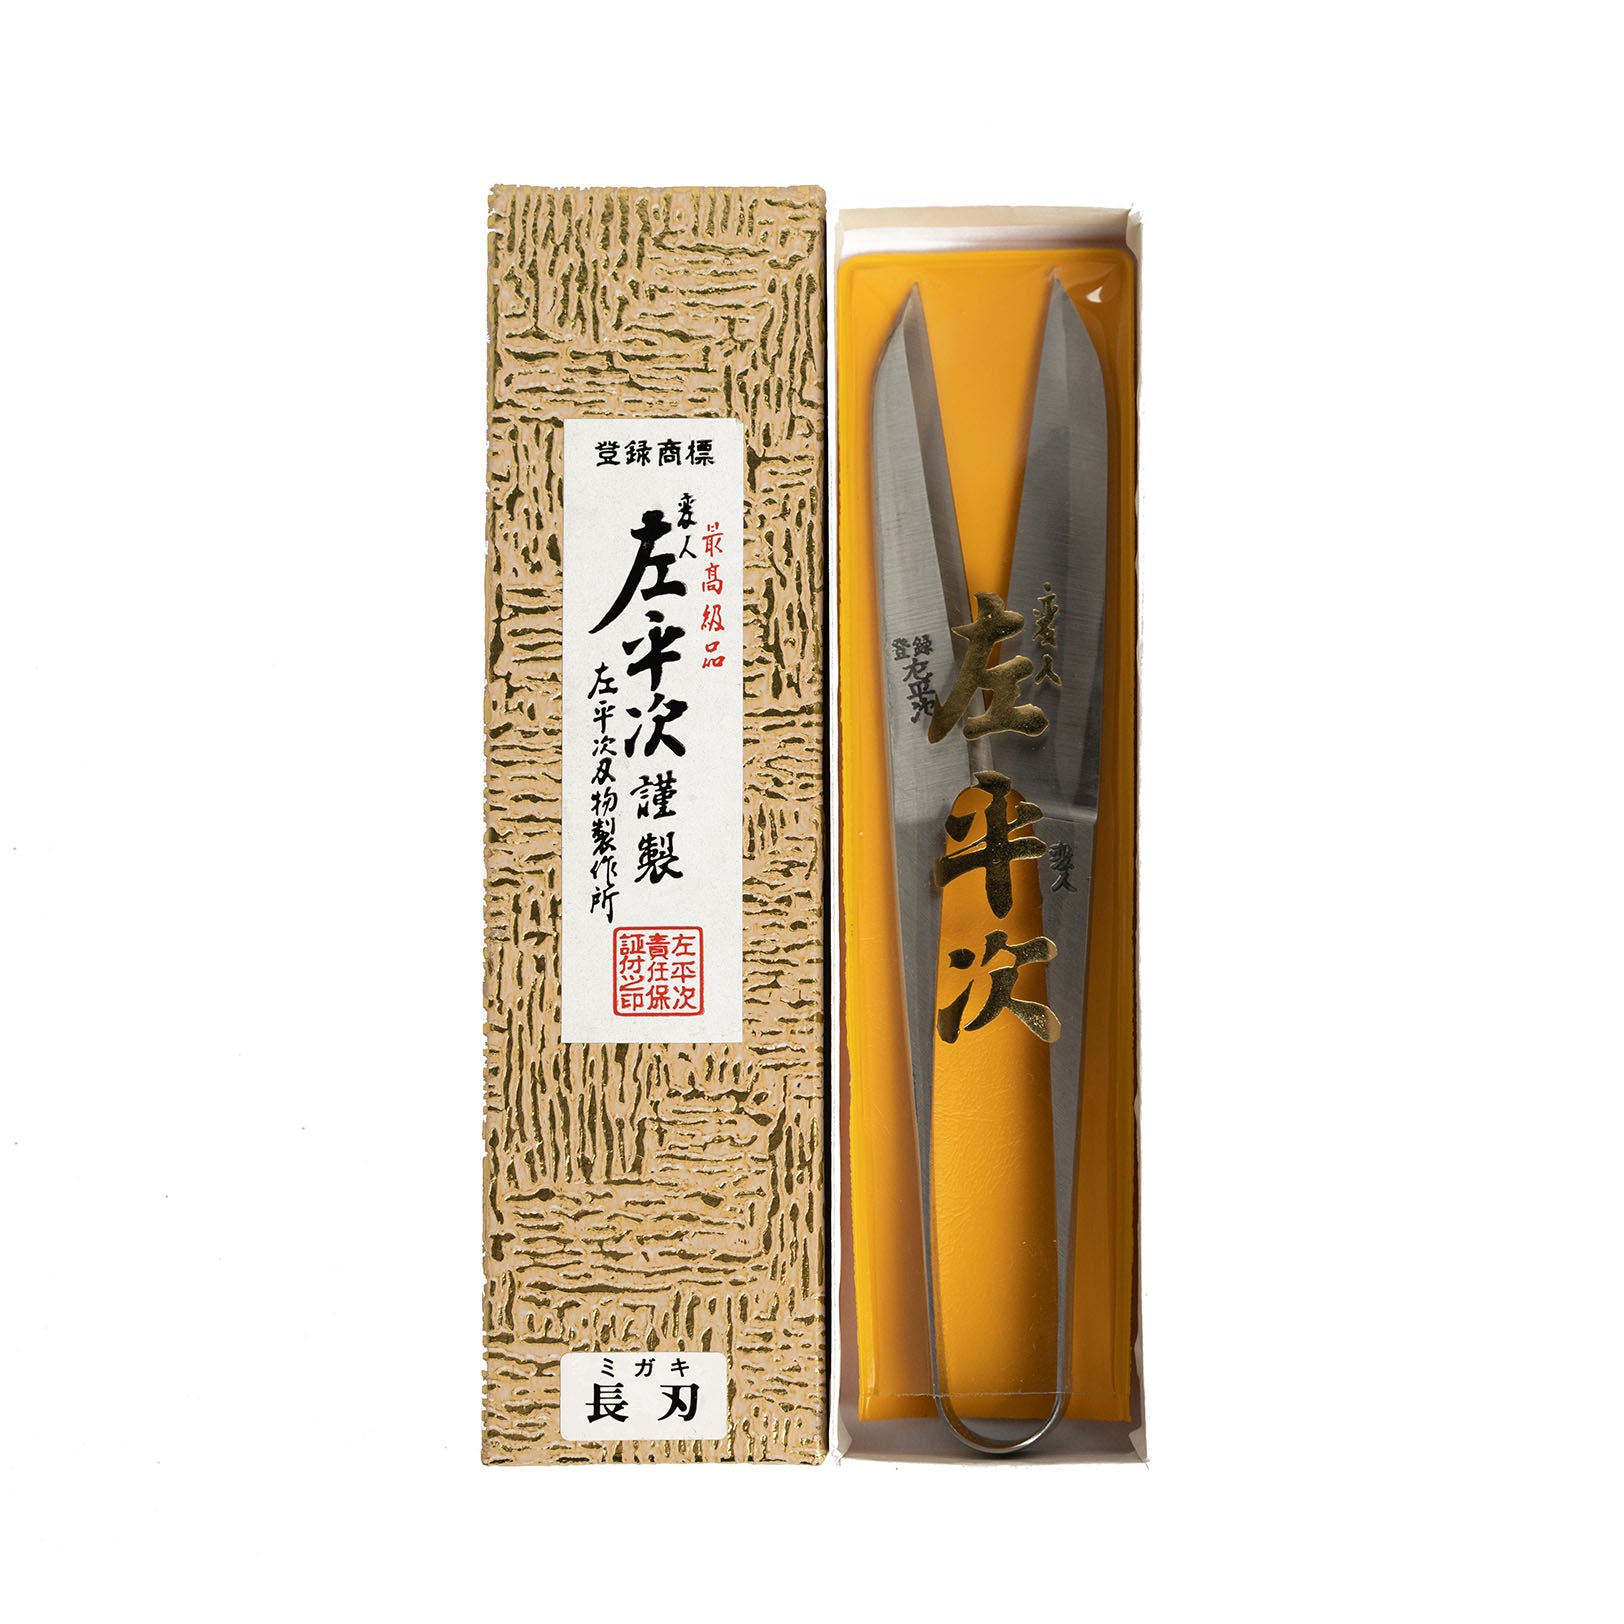 SAHEIZI Long Blade Scissors for Wagashi